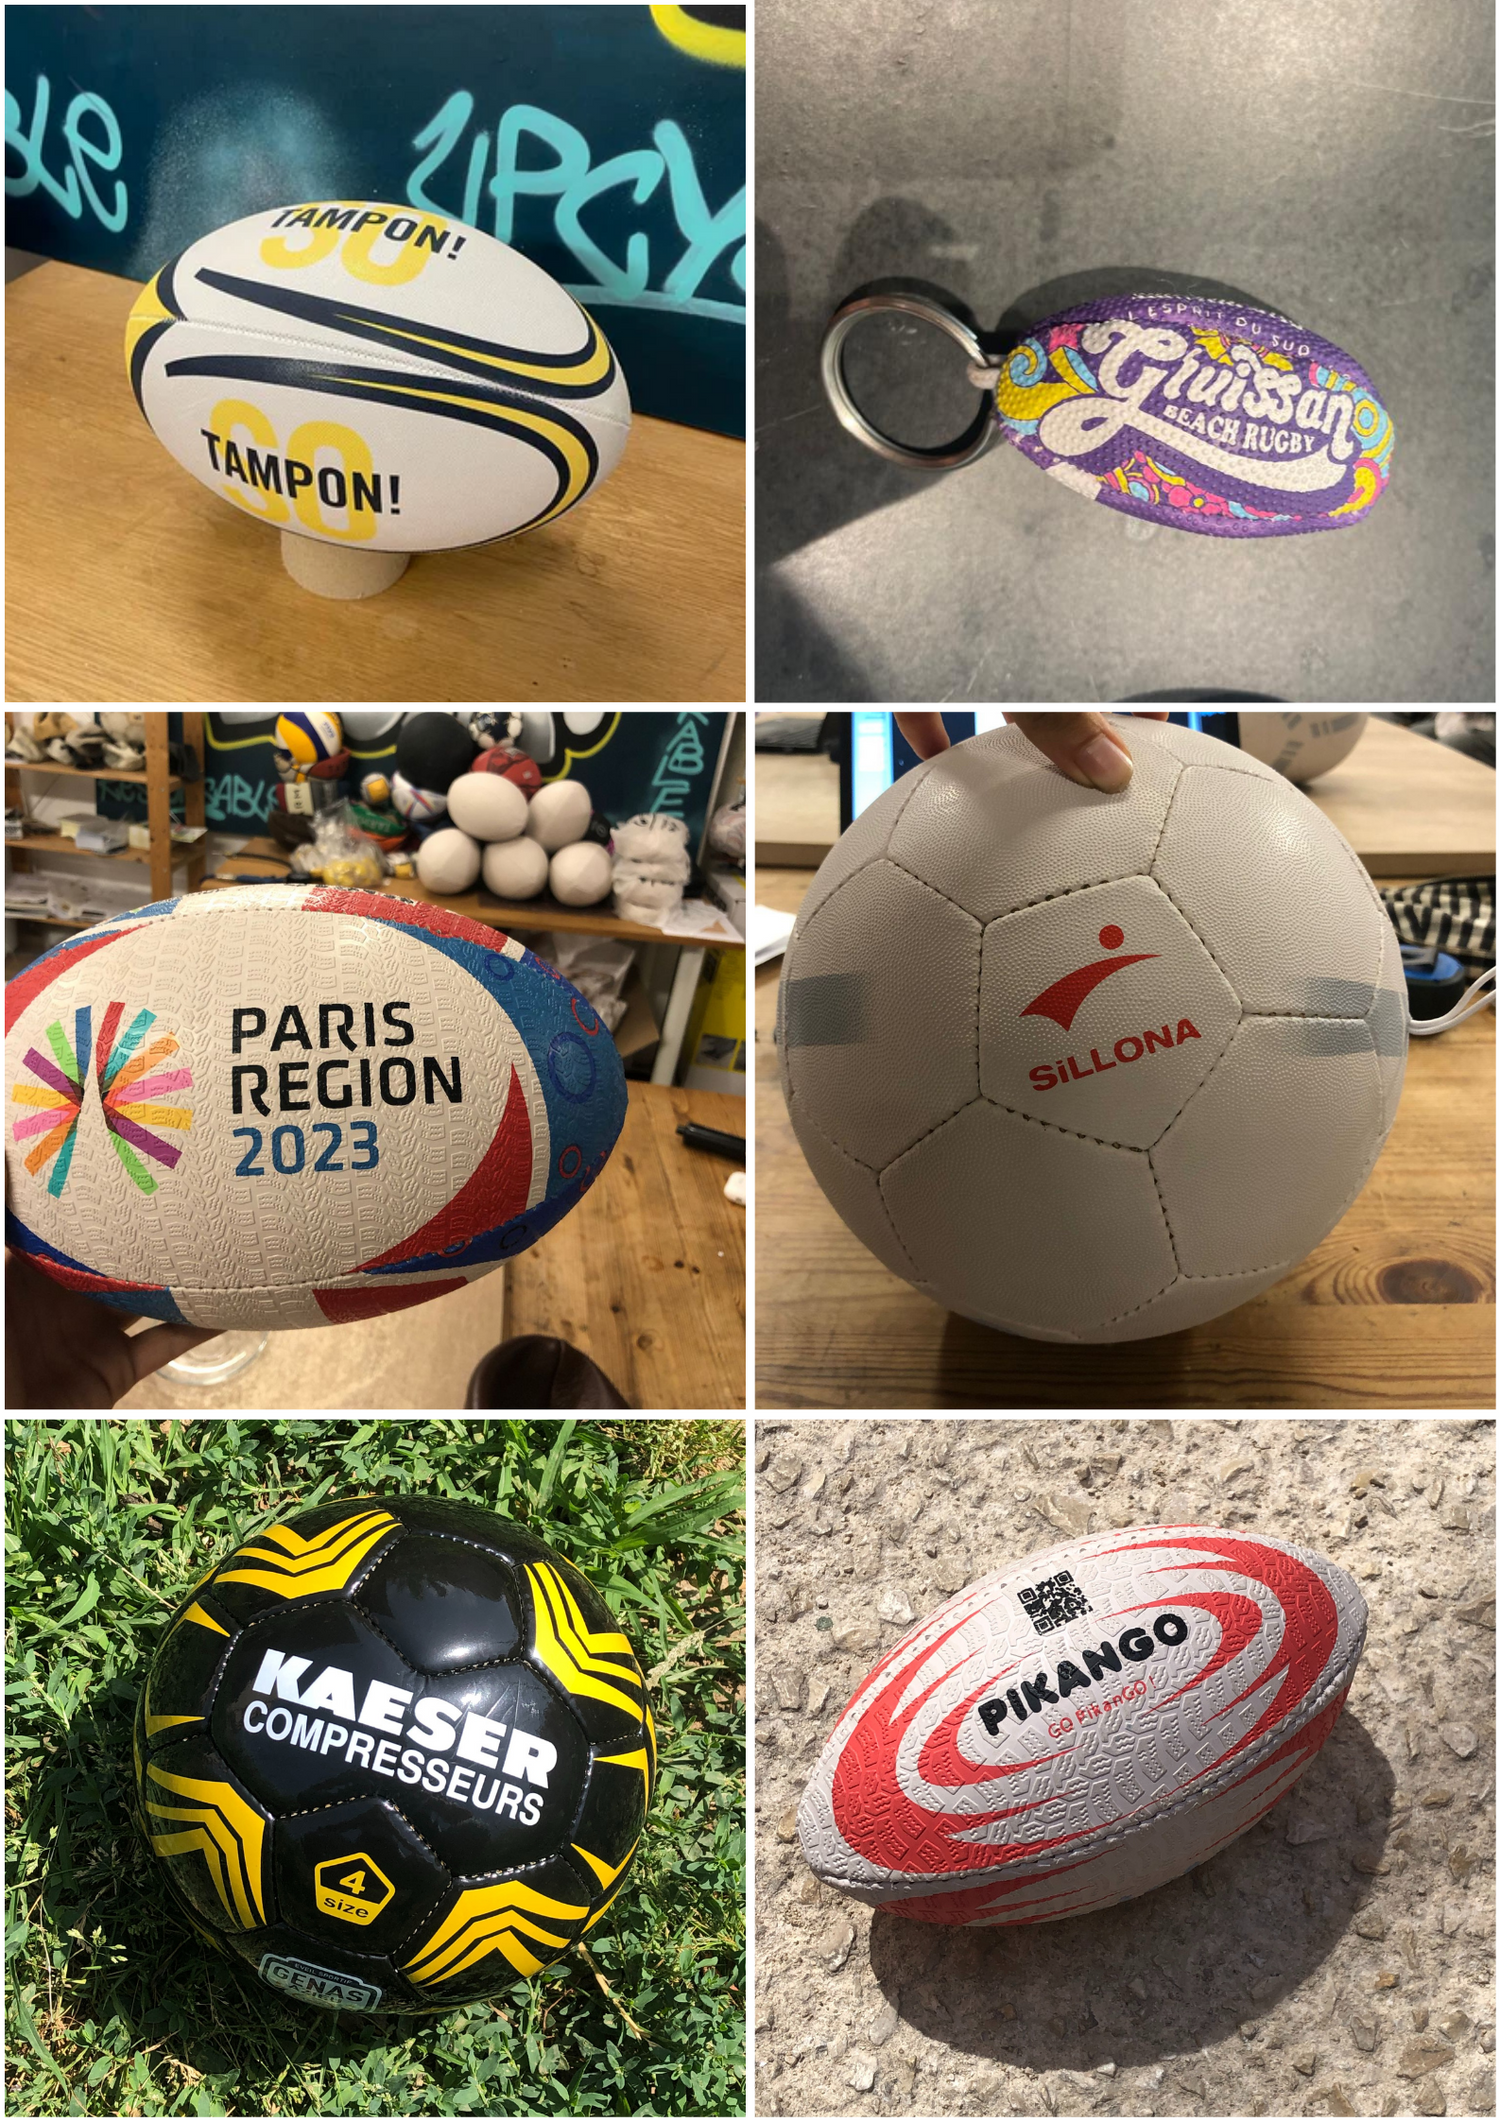 Ballon de rugby, Cadeau d'affaires, Ballon de rugby personnalisé recyclé